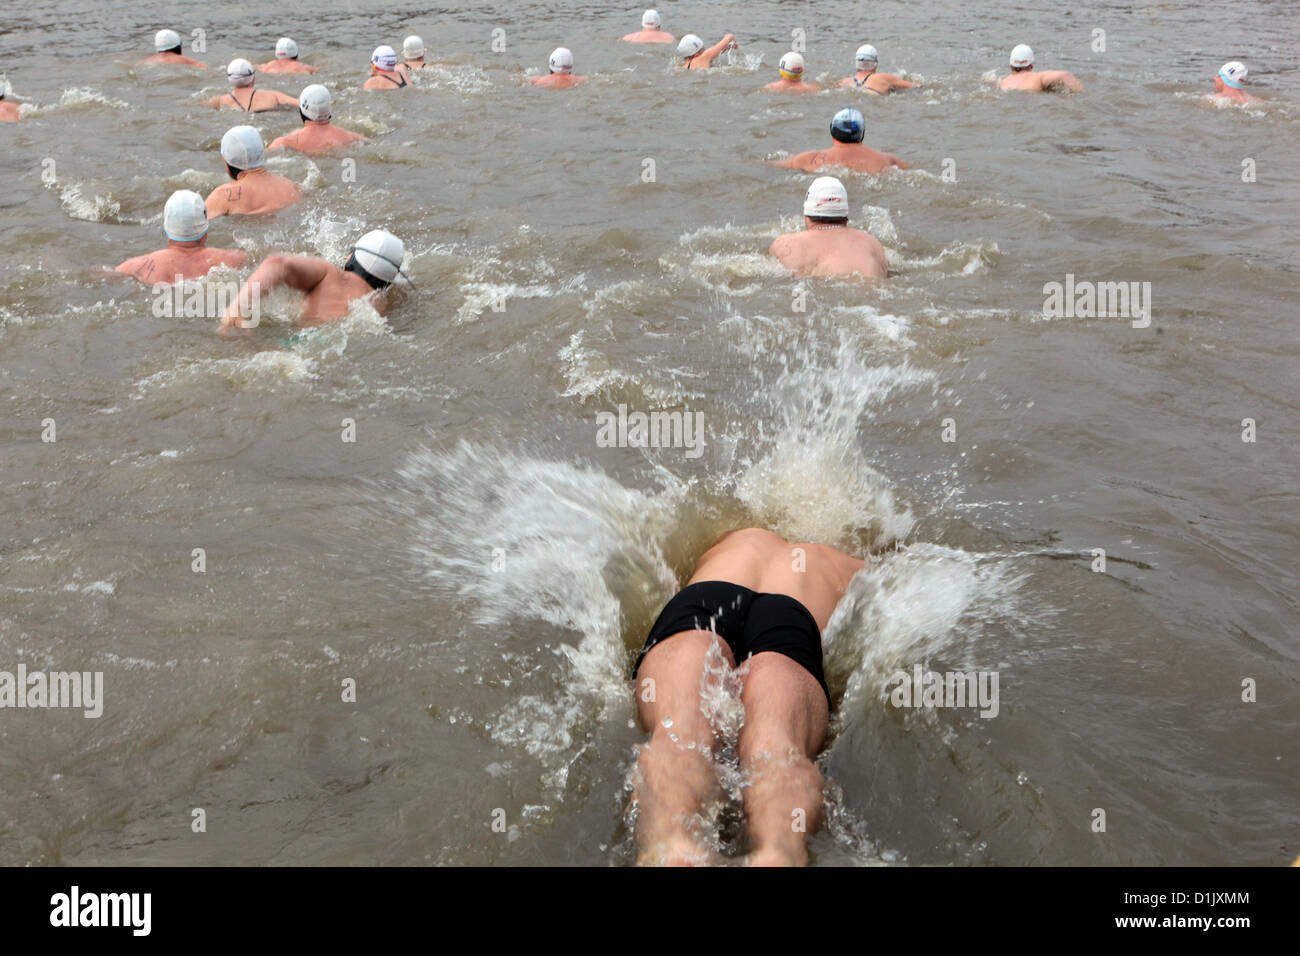 Décembre 26, 2012 Prague, République tchèque, Polar swimmer a sauté dans la rivière Vltava Banque D'Images